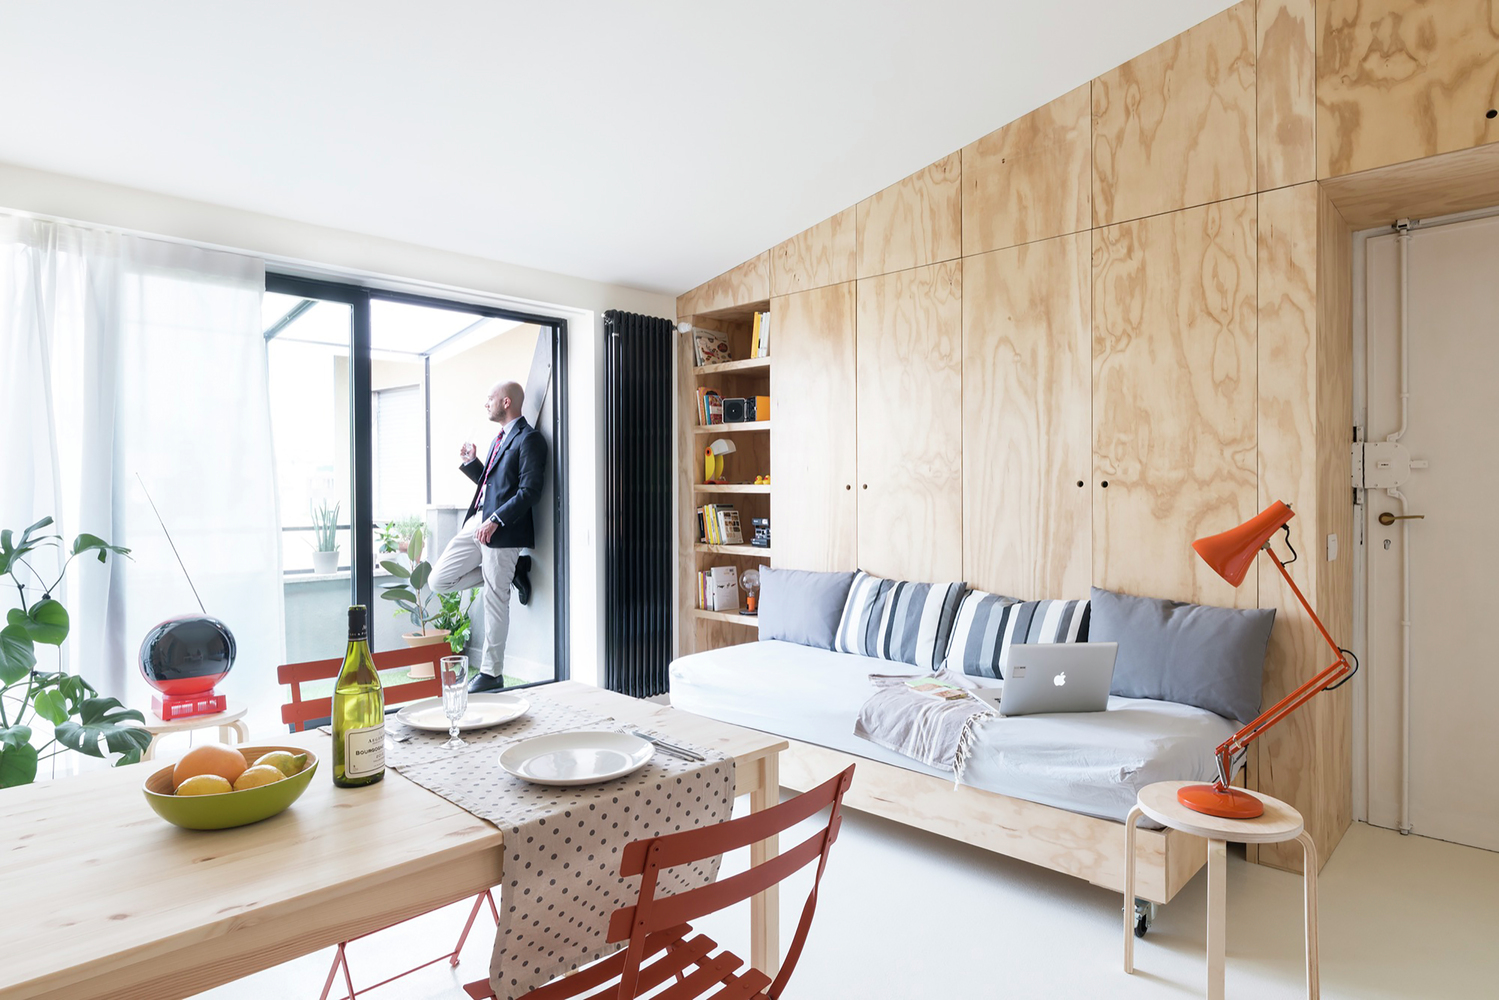 Đội ngũ của Studio Work đã thiết kế nội thất cho căn hộ của 2 quý ông độc thân tại Milan, thành phố phía Bắc nước Ý, với diện tích vỏn vẹn chỉ 28m². 